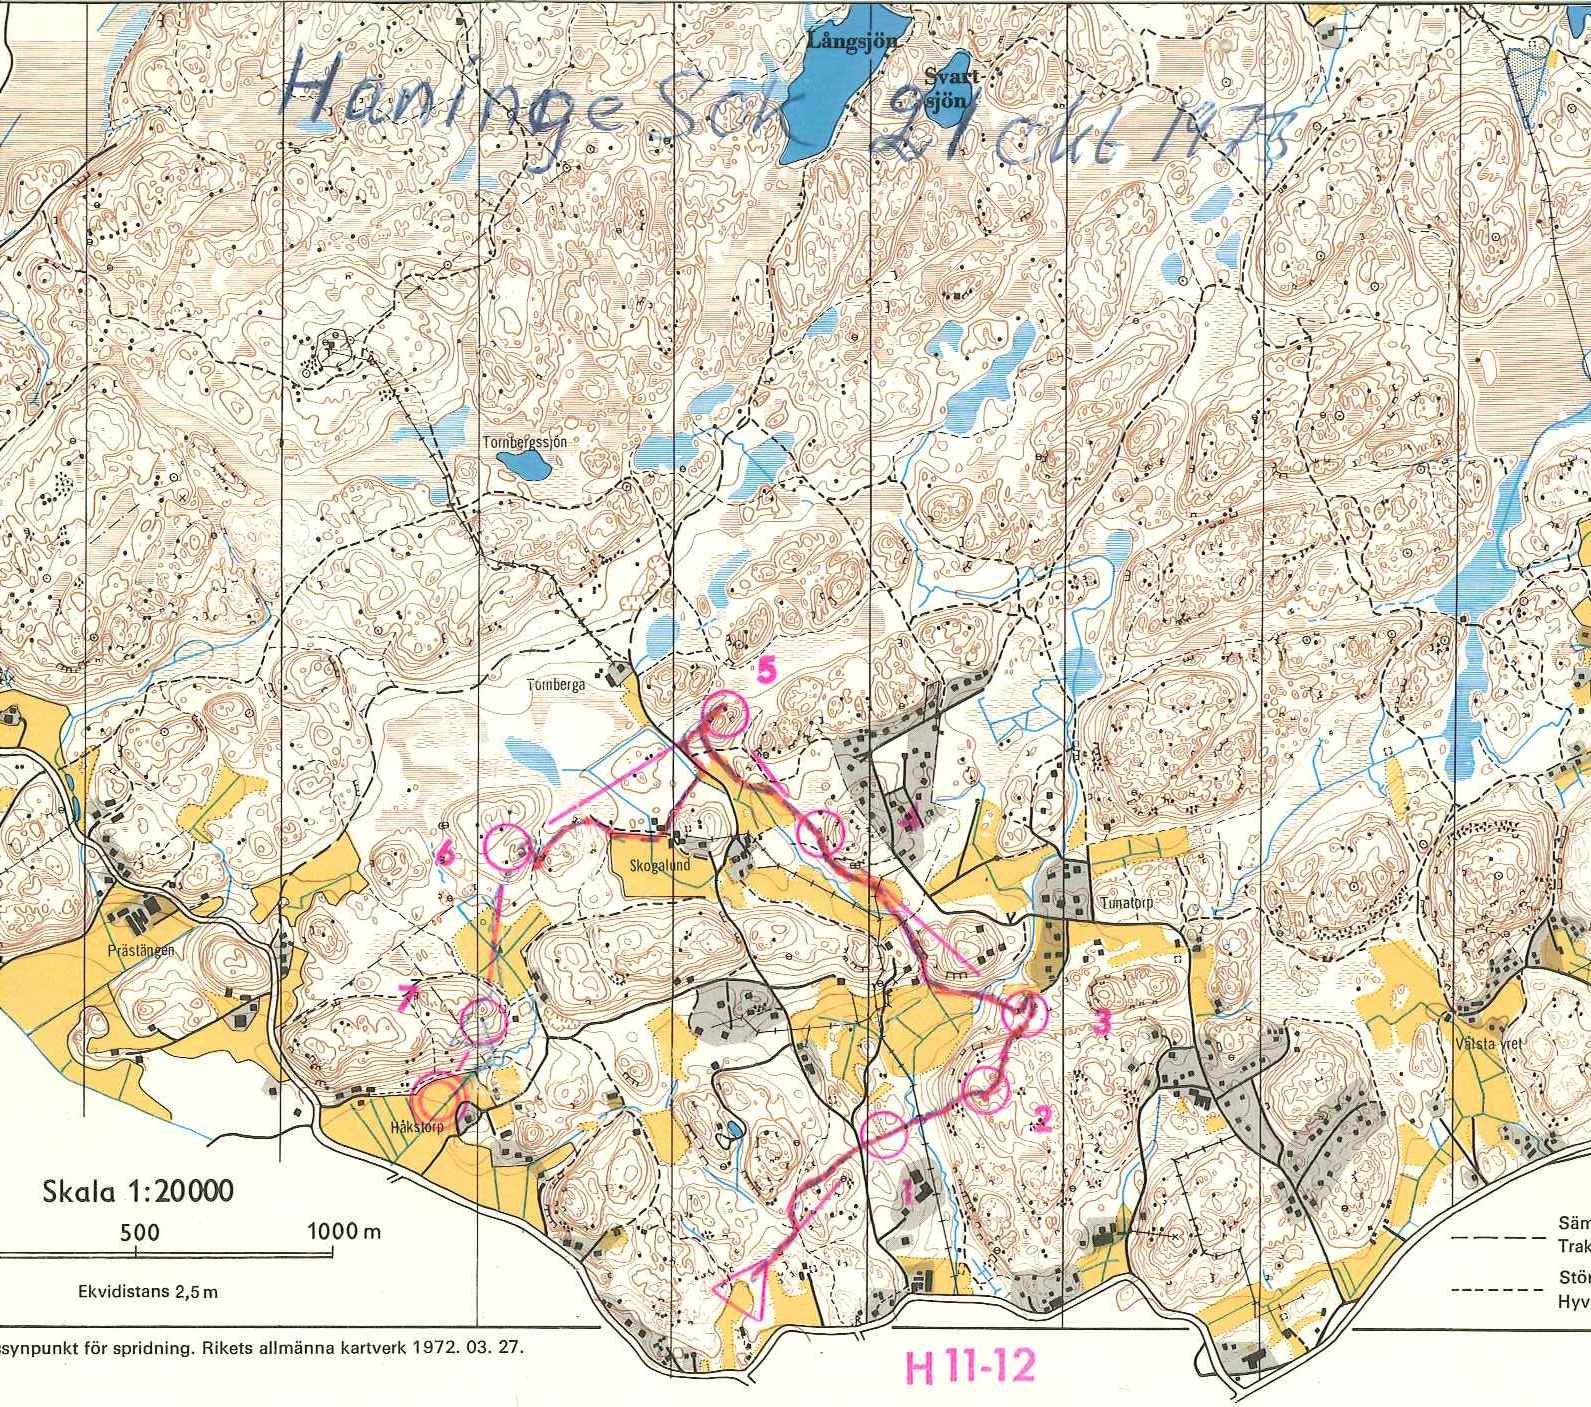 Haninge (21-10-1973)